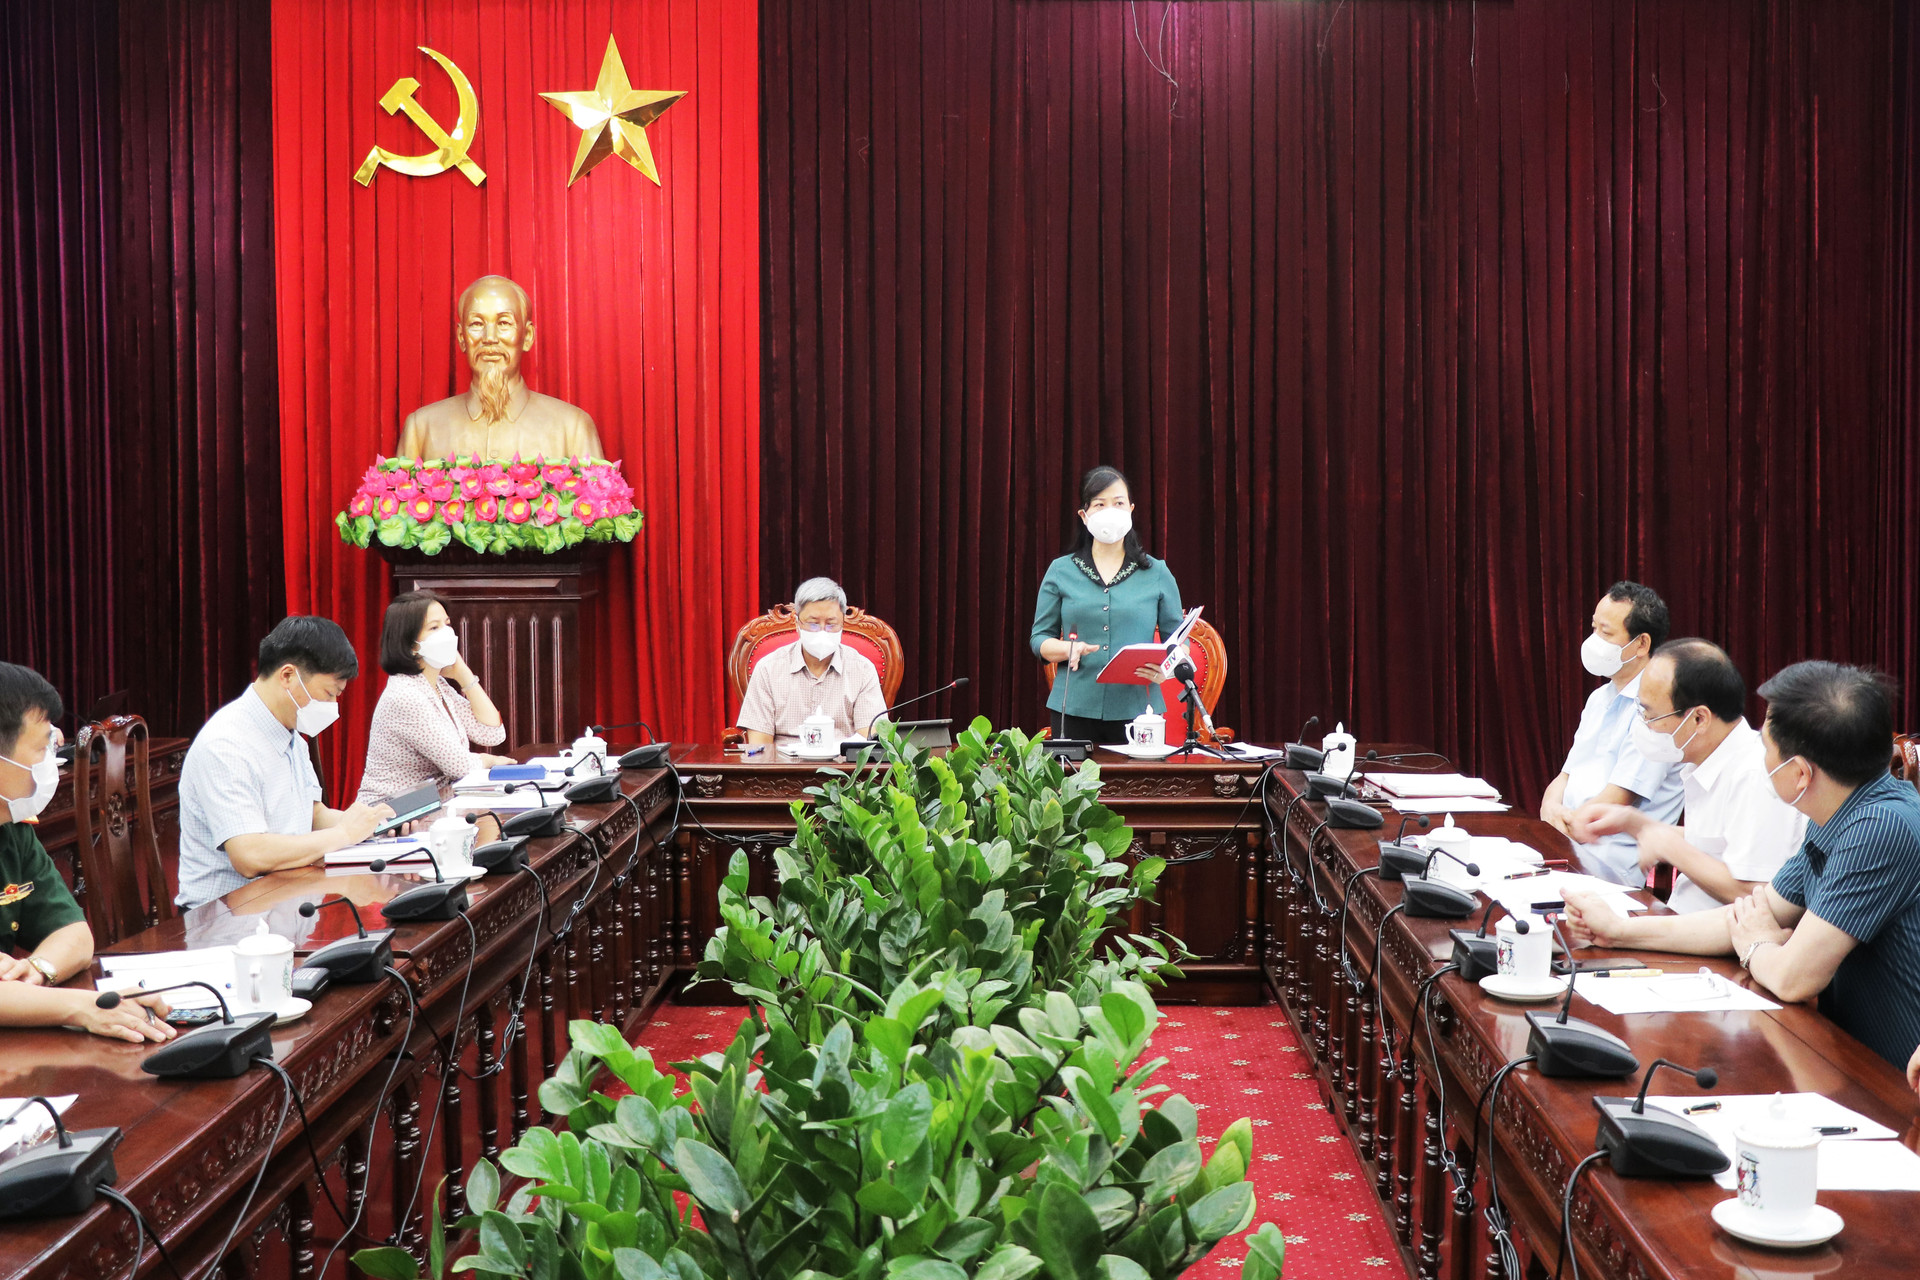 Bắc Ninh:Tổ chức Hội nghị mở rộng bàn giải pháp phòng chống dịch covid-19 - Ảnh 1.